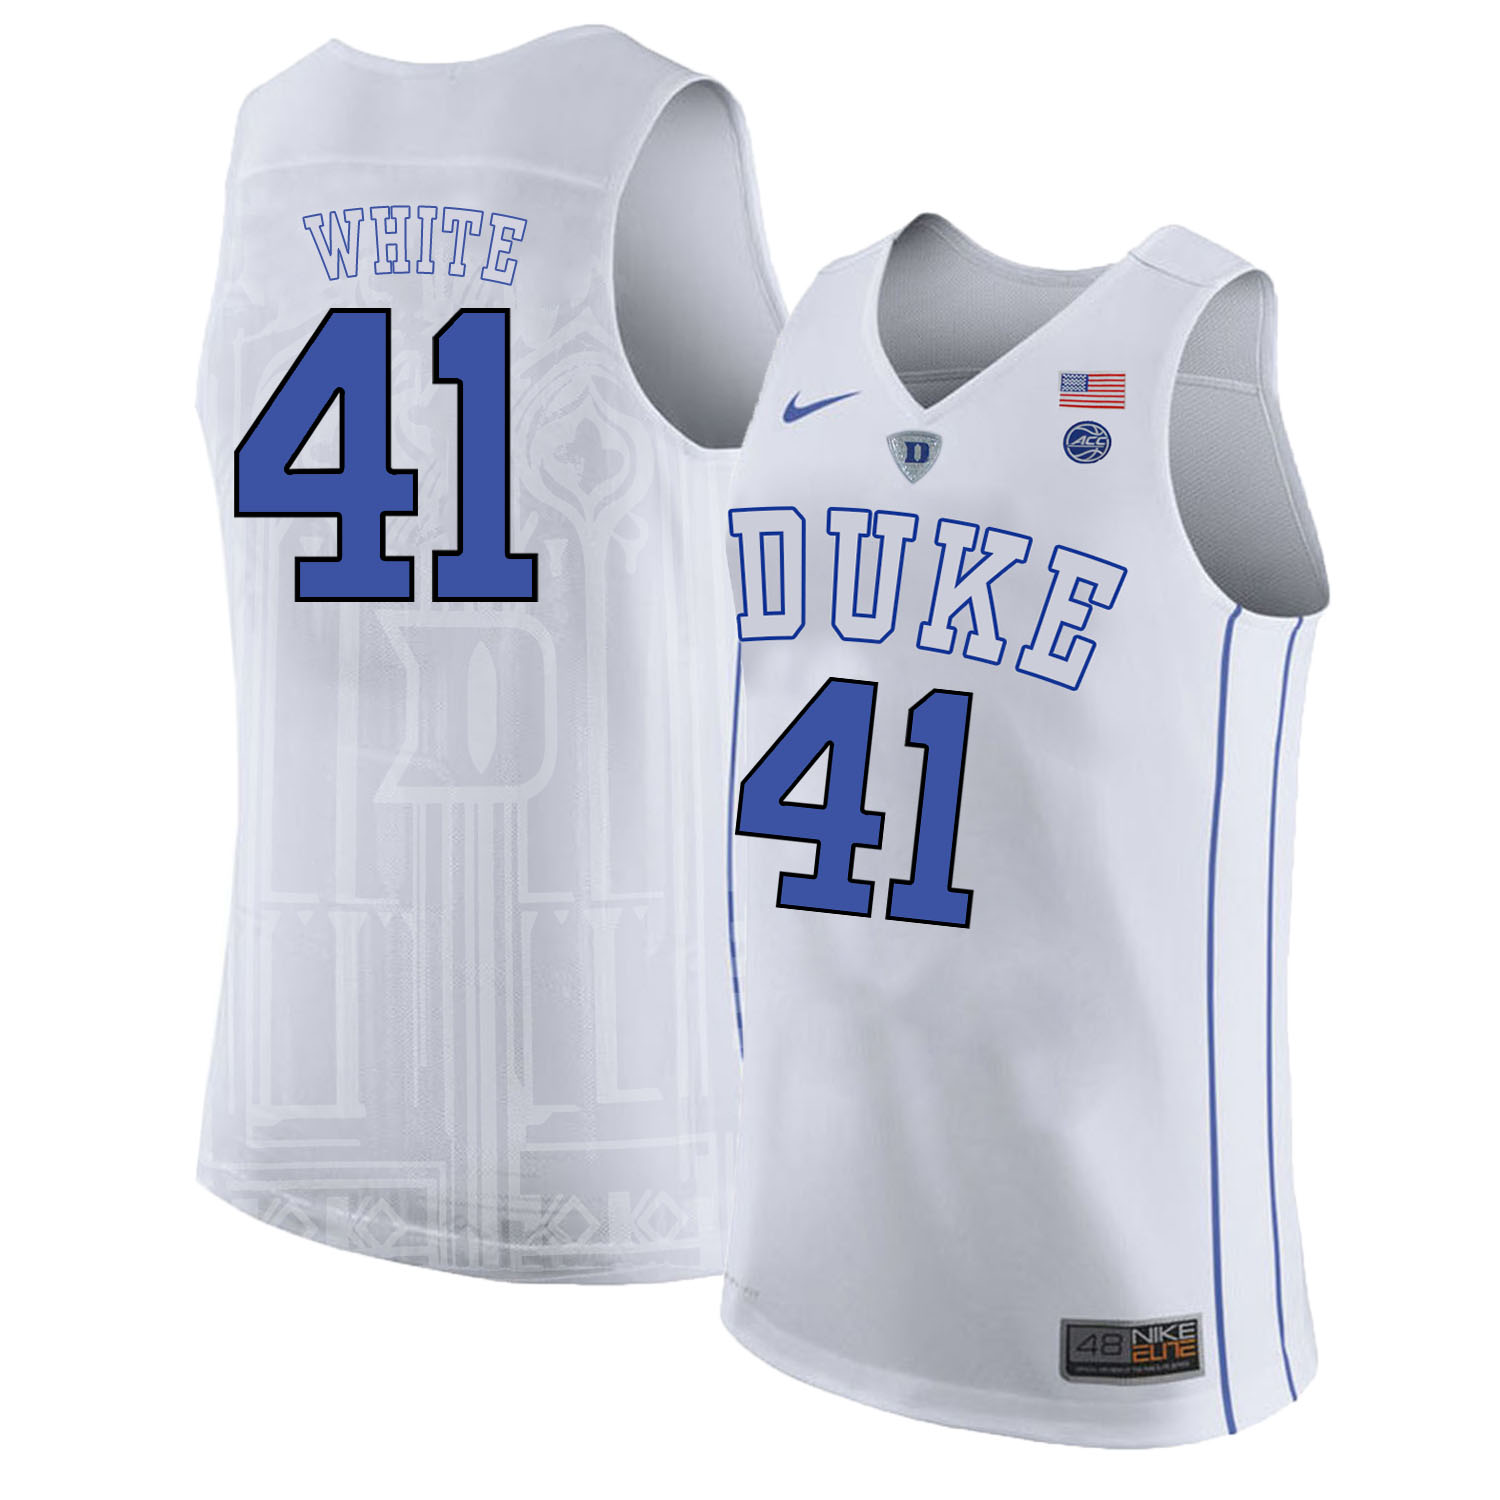 Duke Blue Devils 41 Jack White White Nike College Basketball Jersey